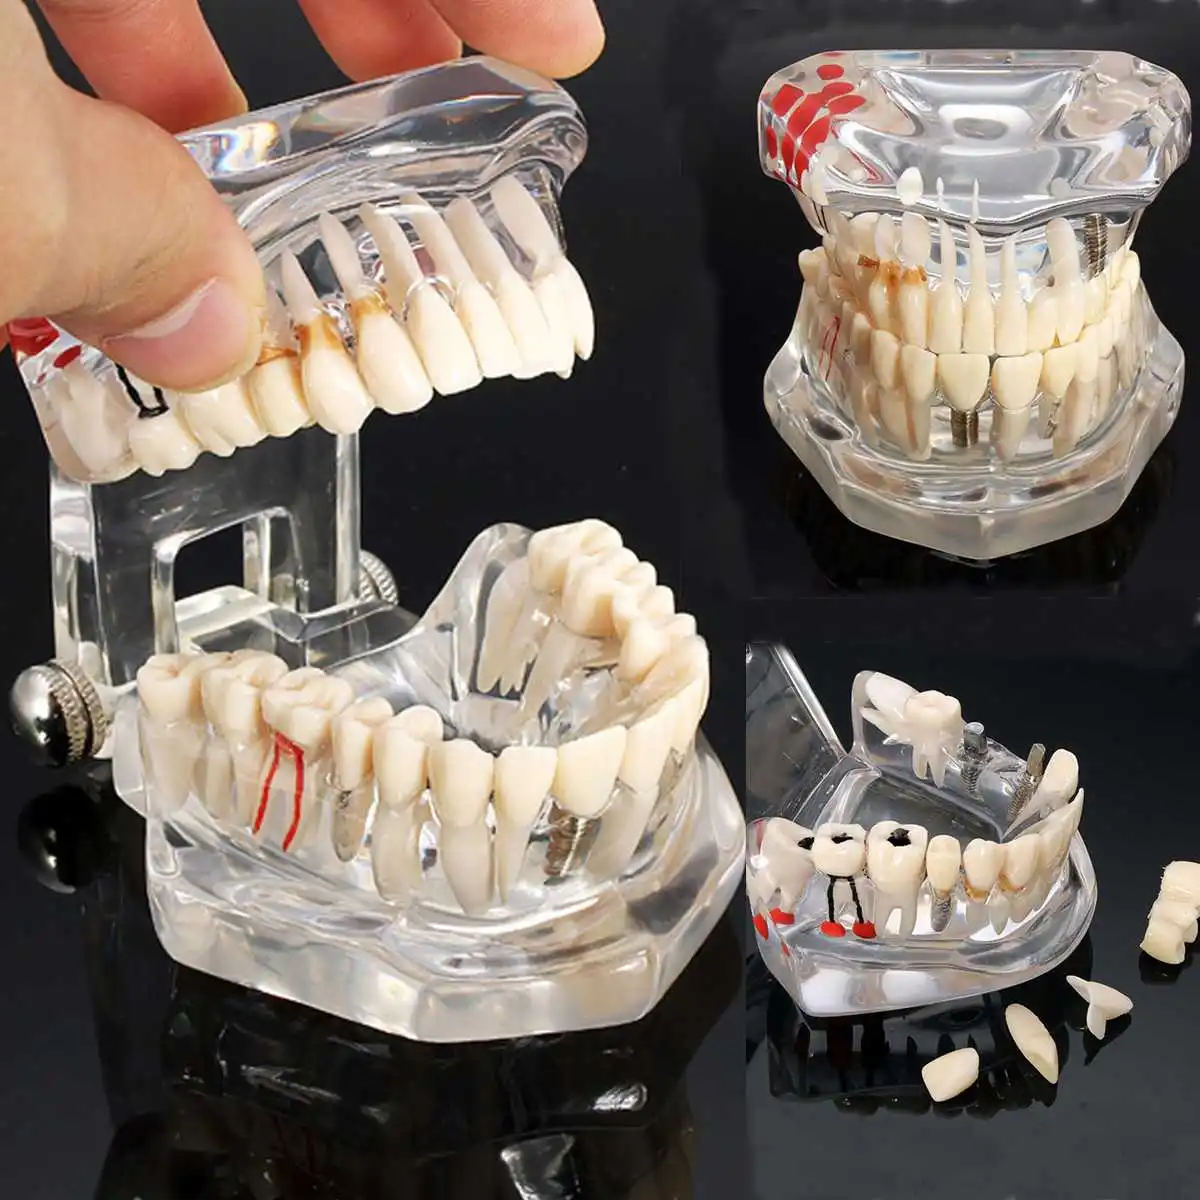 Искусственные зубы